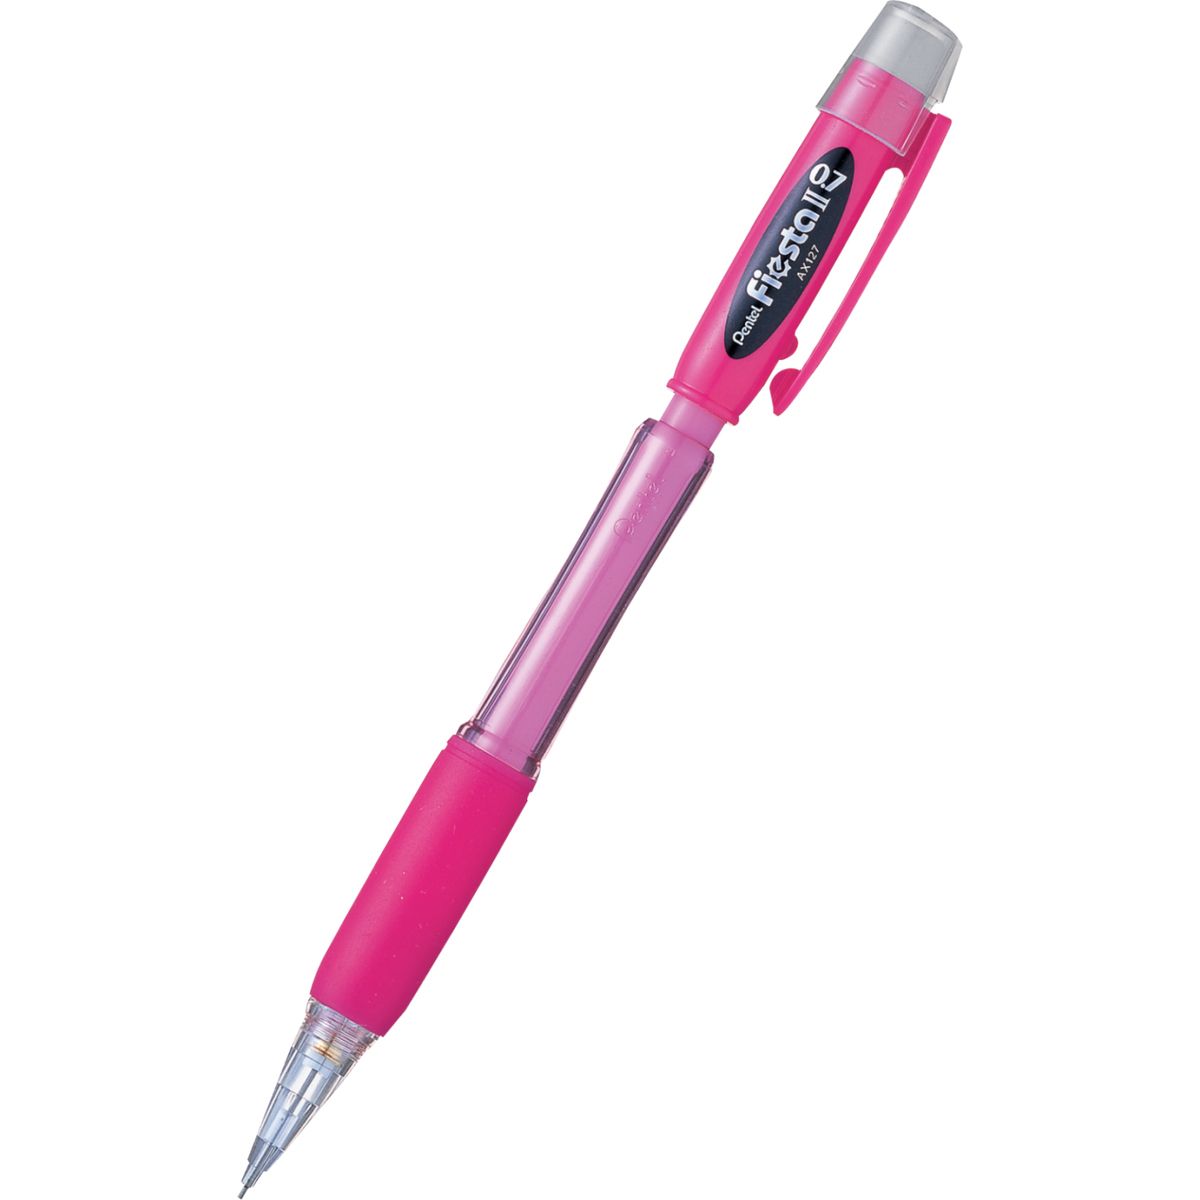 Ołówek automatyczny Pentel 0,7mm (AX127)